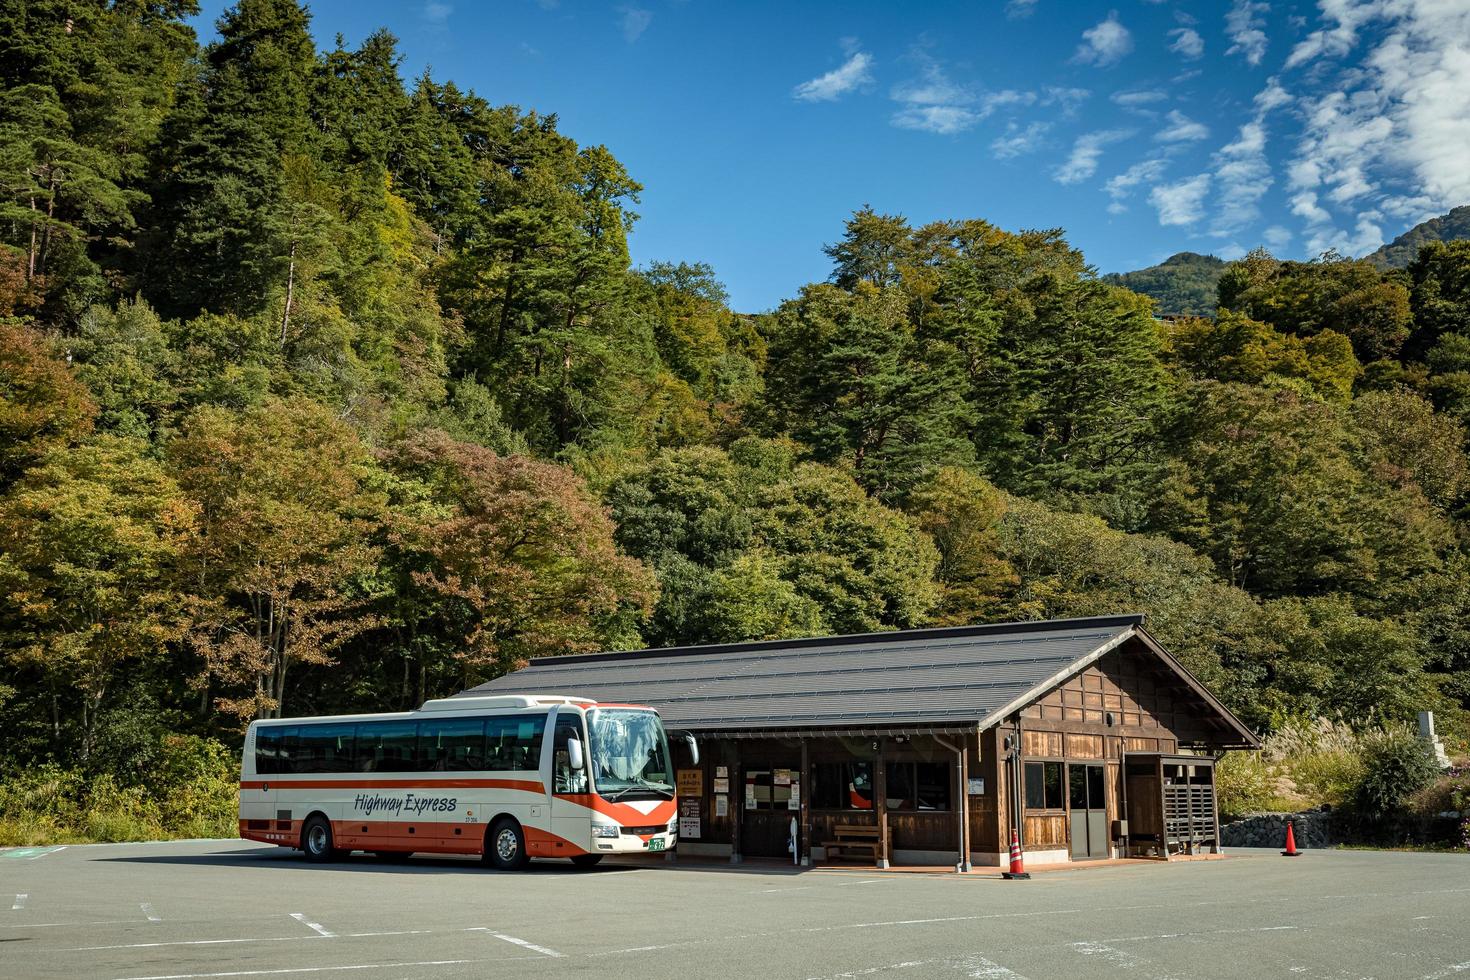 shirakawa, gifu, japan - oktober 2022 - shirakawago touristisches buszentrum während des herbstlaubs in der herbstsaison mit wenigen touristen nach einer koviden situation. foto